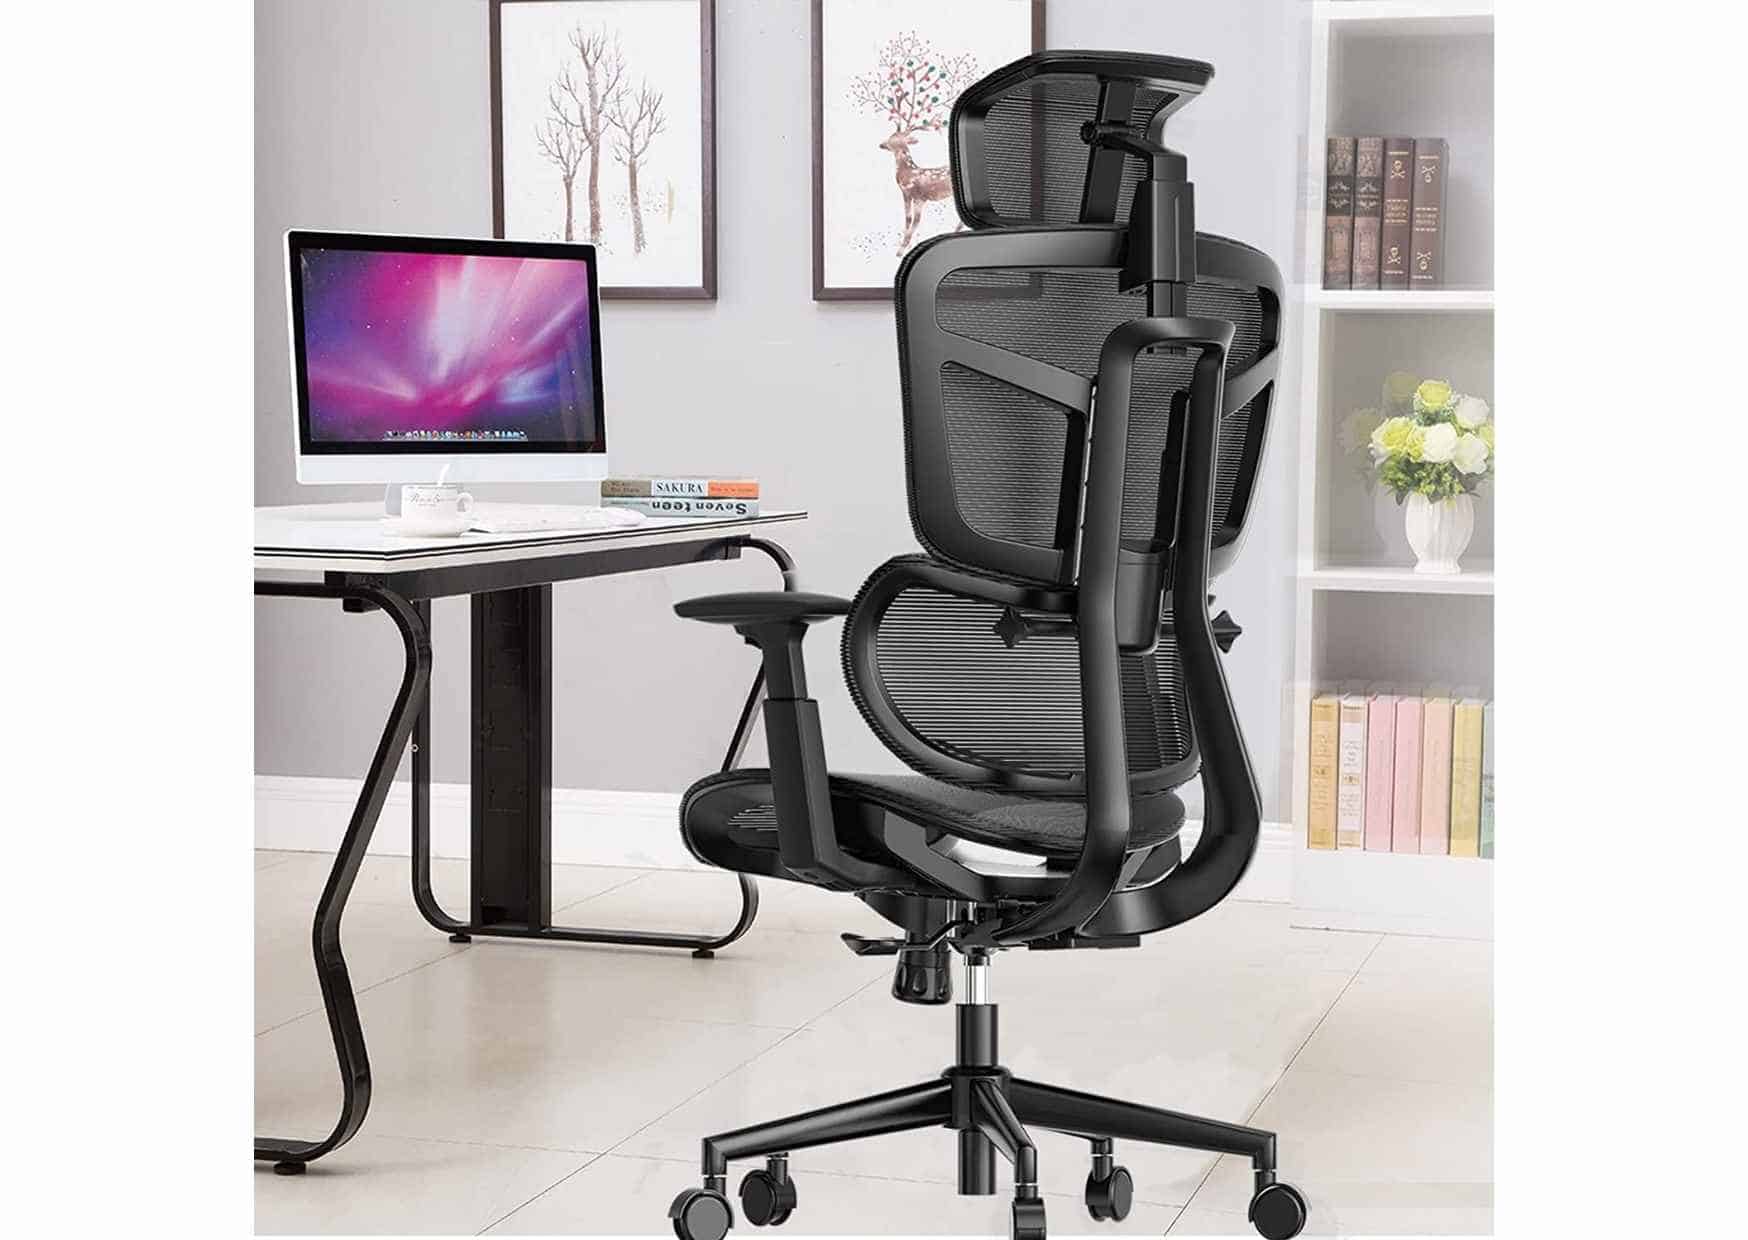 SAMOFU Ergonomic Office Chair